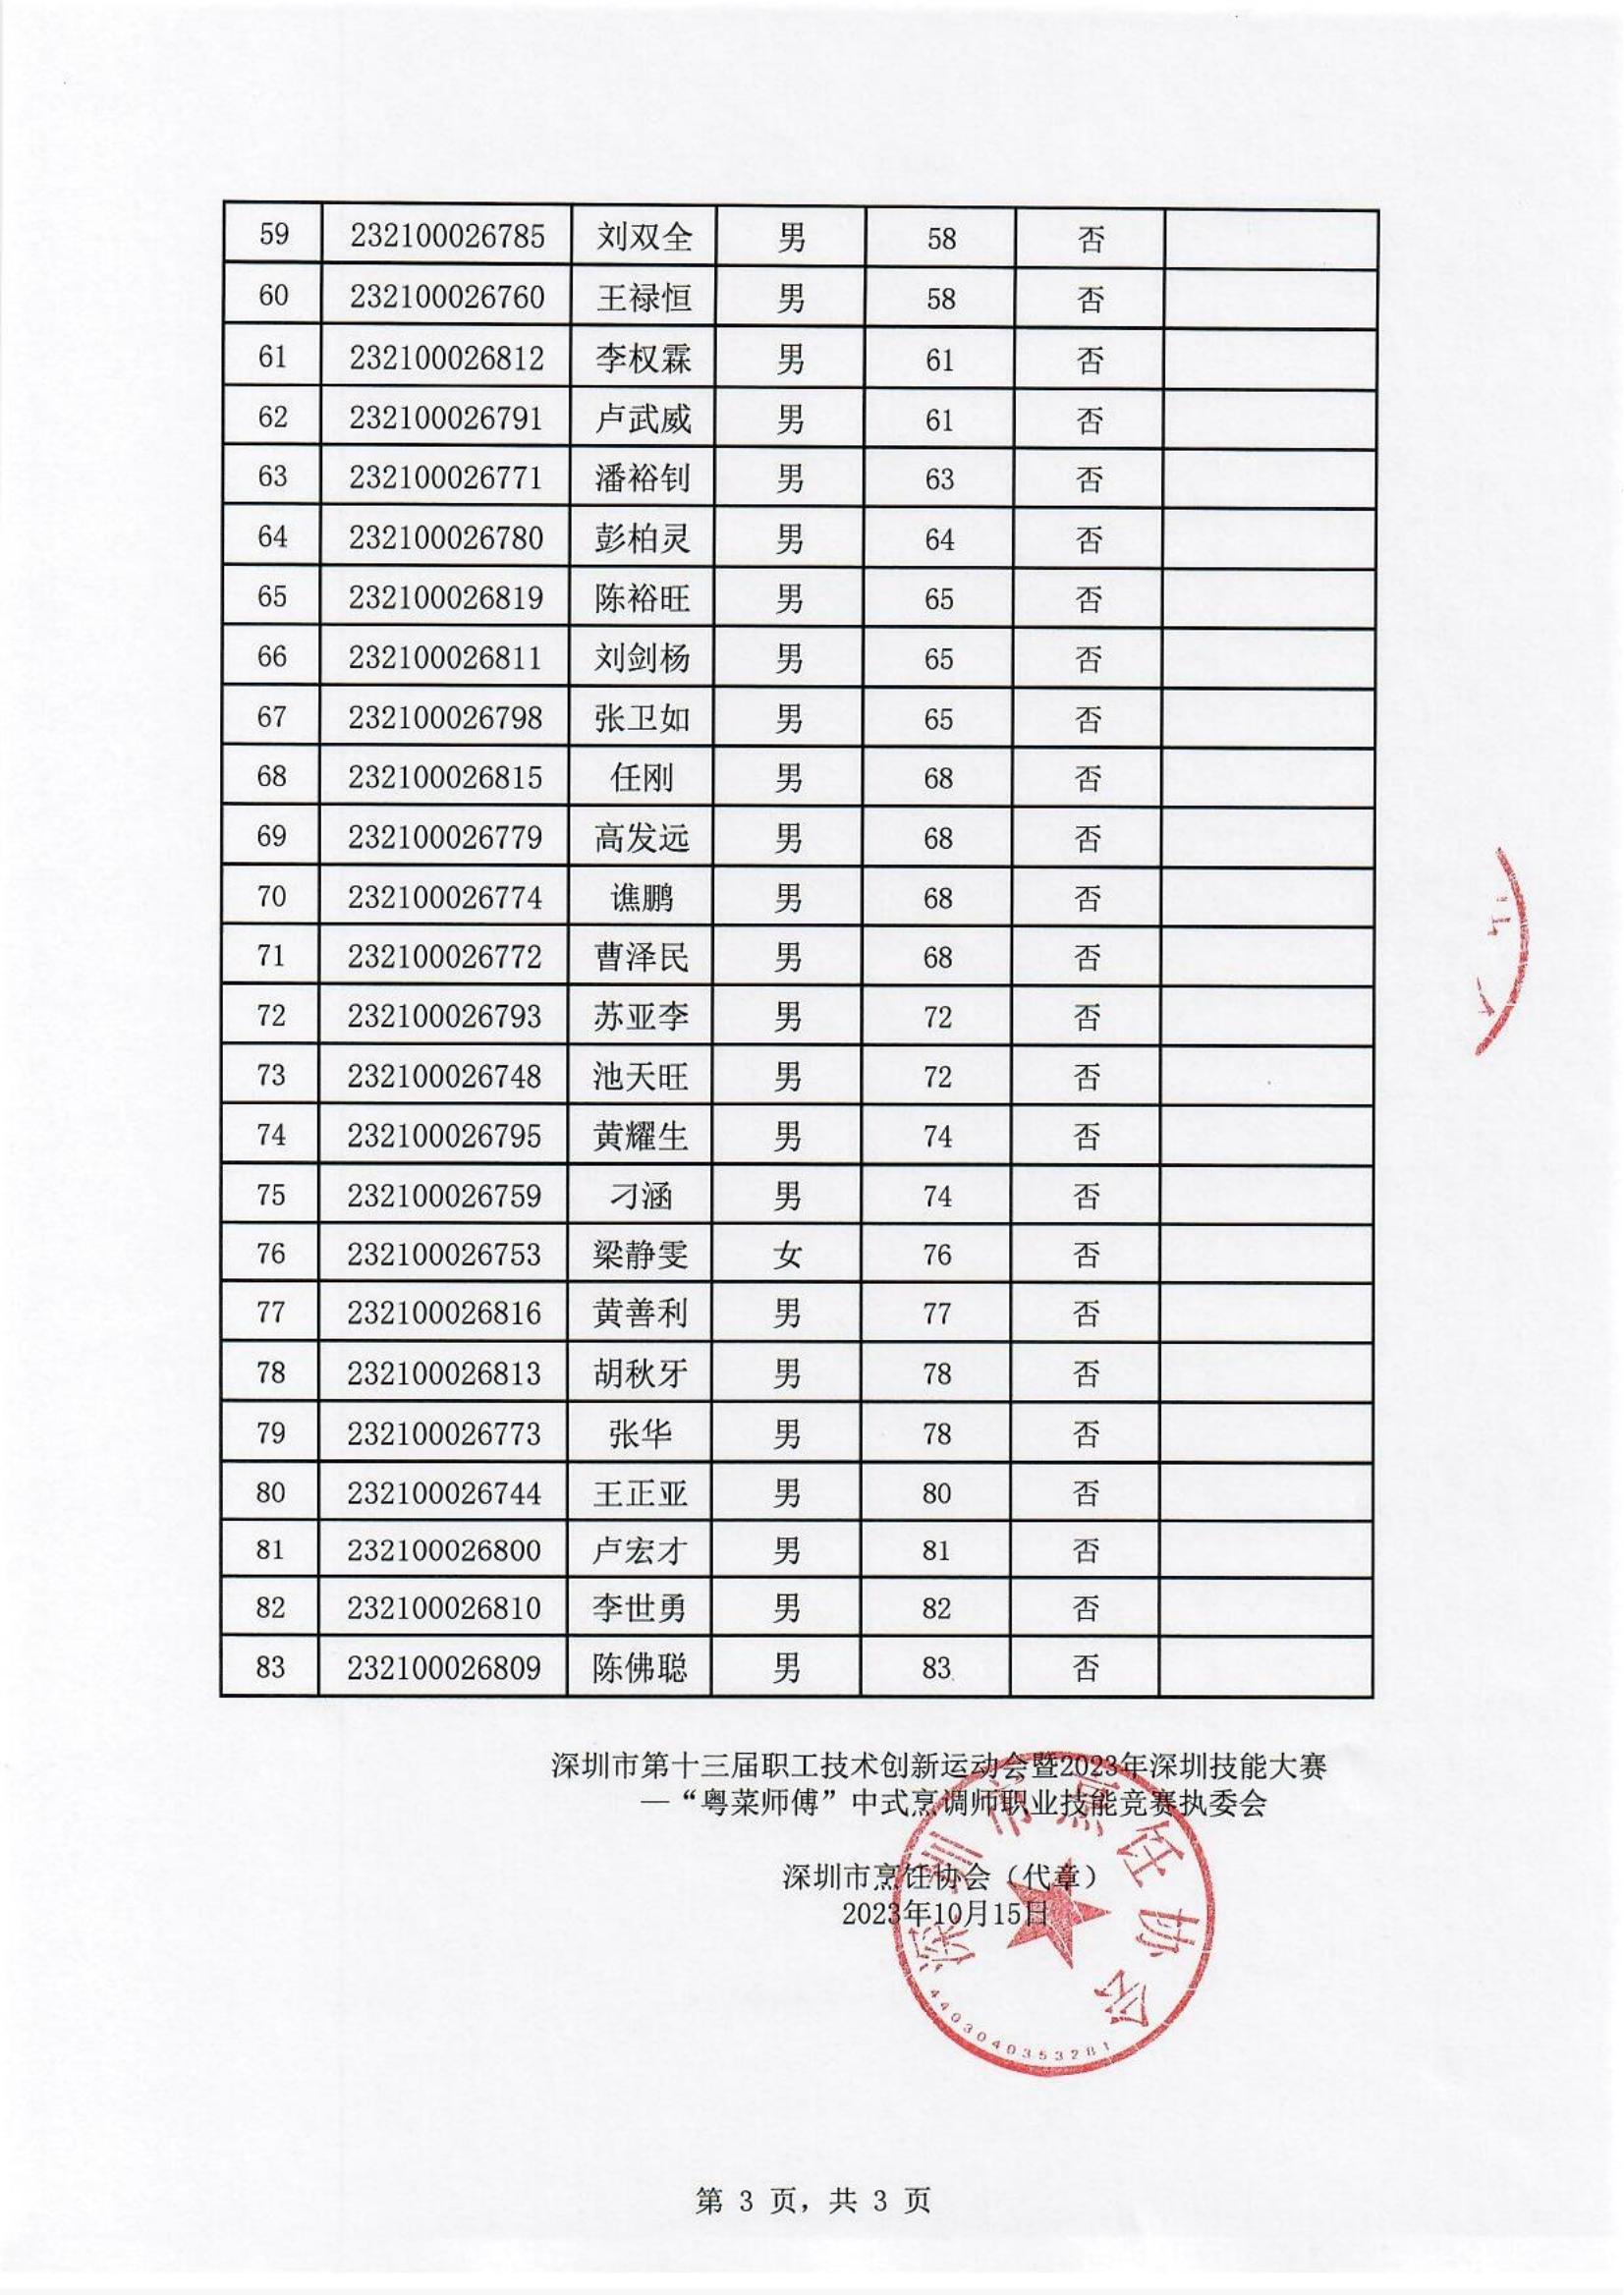 中式烹调职业技能竞赛初赛排名公布表_02.jpg